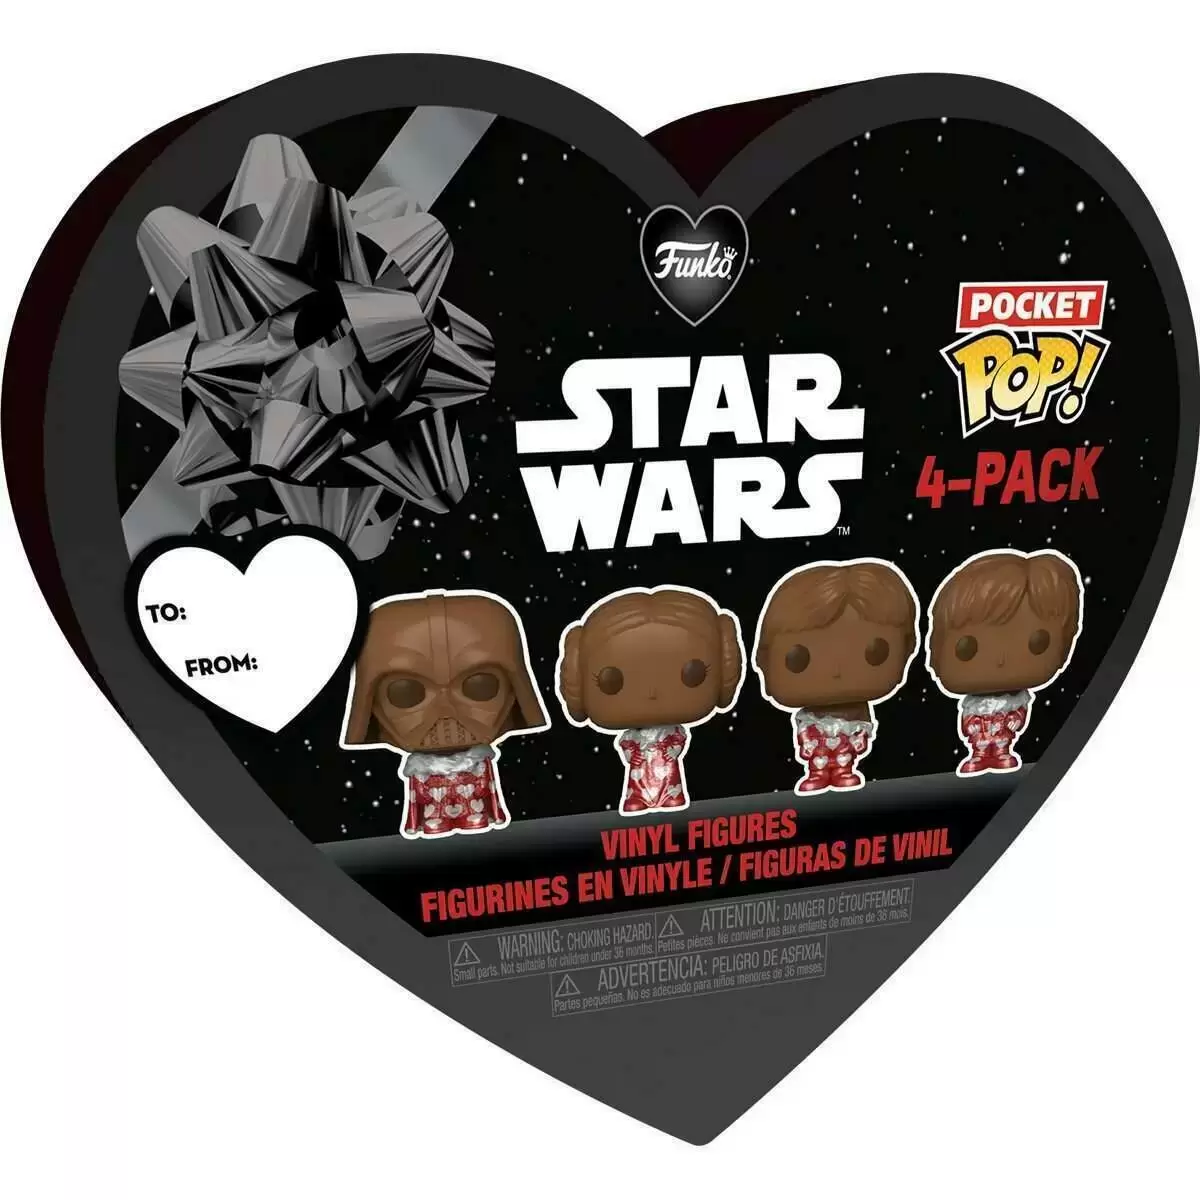 Pocket Pop! and Pop Minis! - Star Wars - Darth Vader, Princess Leia, Han Solo & Luke Skywalker 4 PAck